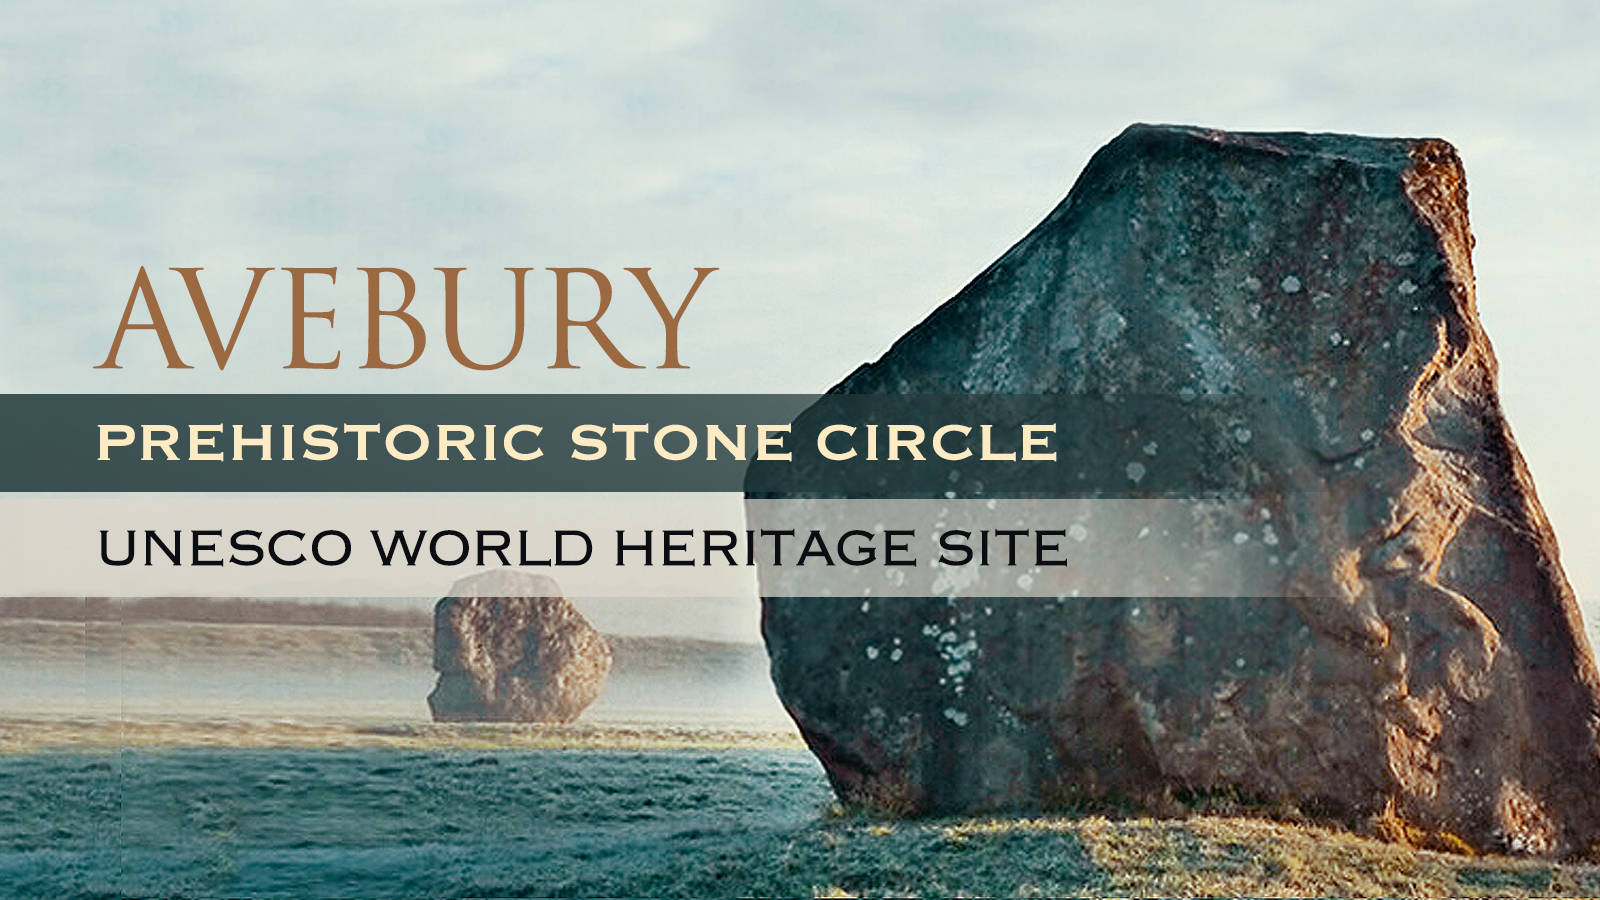 Avebury The World's Largest Prehistoric Stone Circle Archaeology Bradshaw Foundation